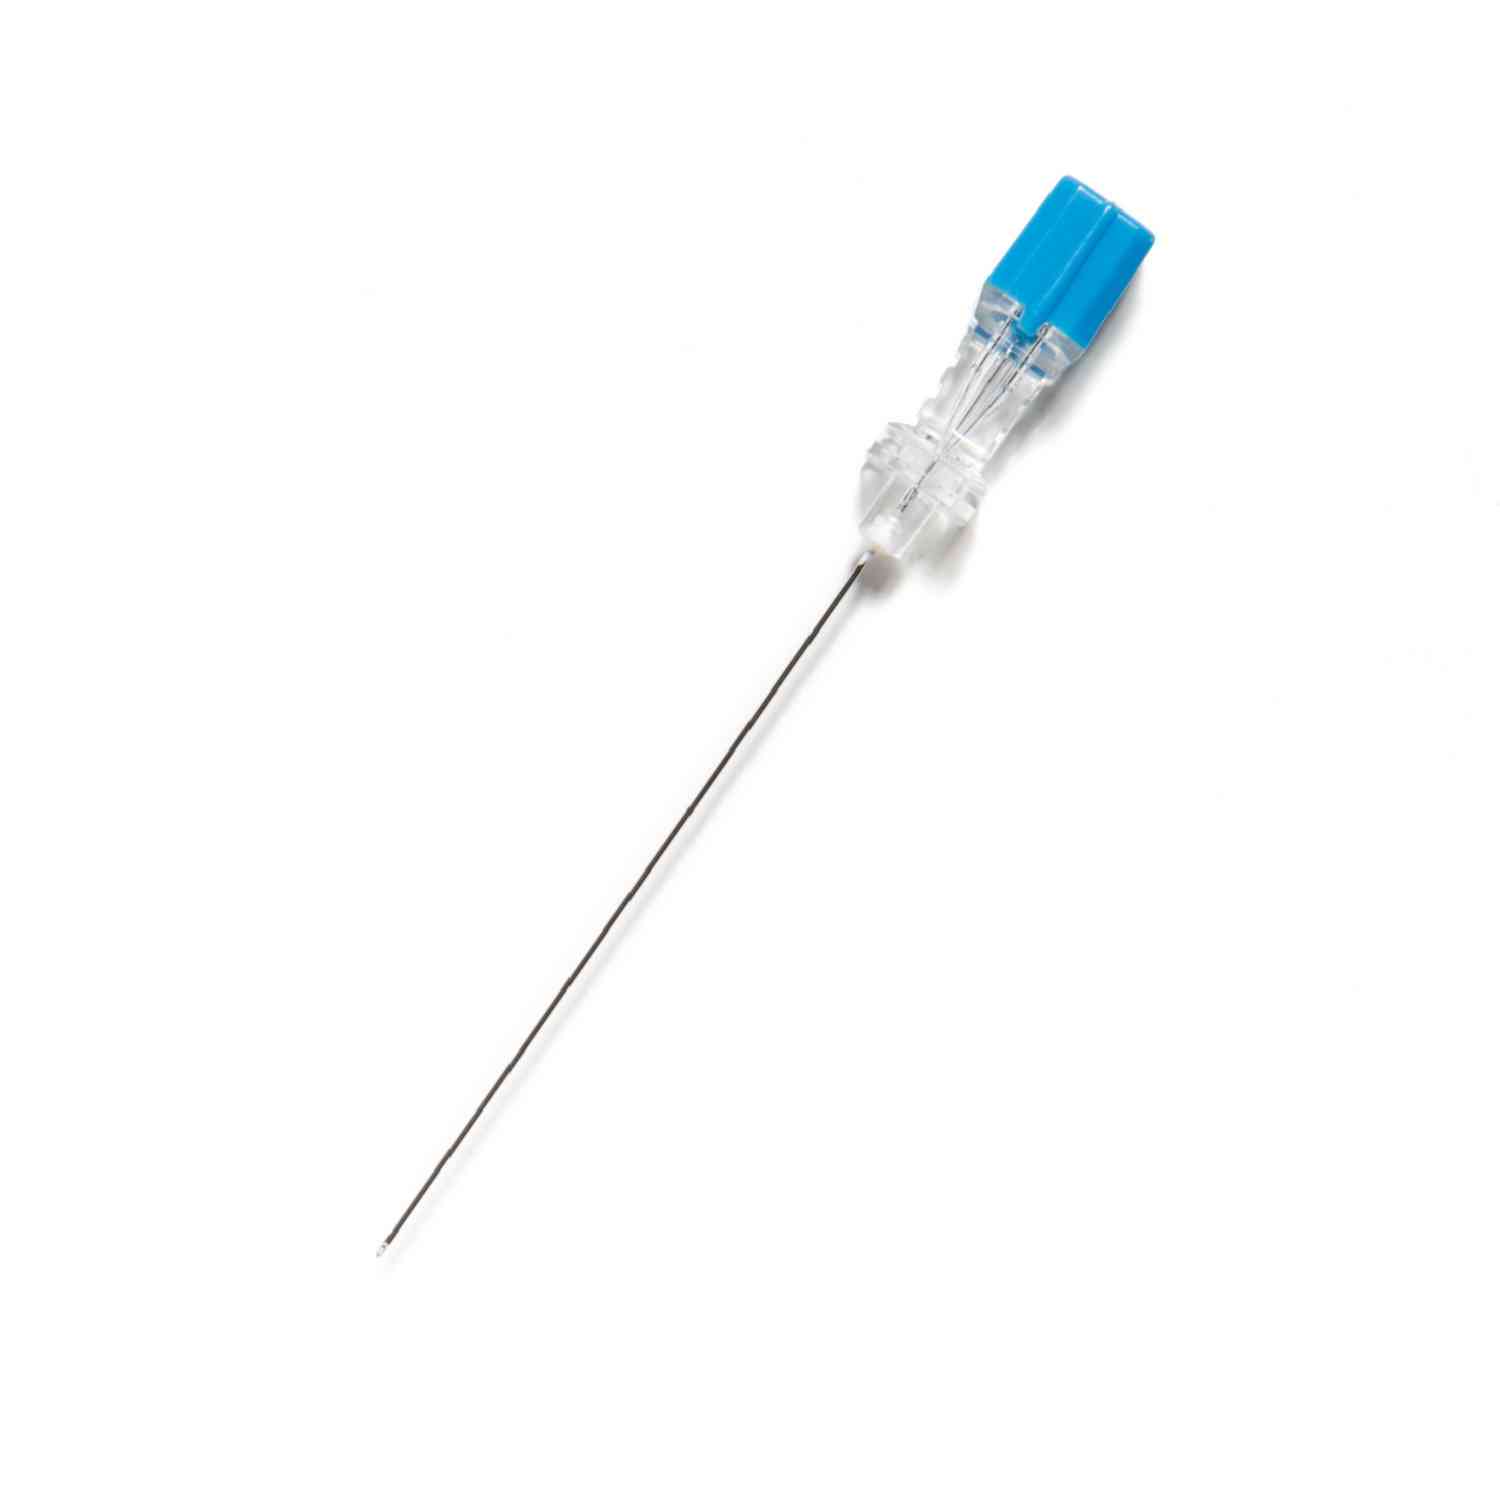 Quincke Needle 25ea/box - 183A026 | Avanos Pain Management